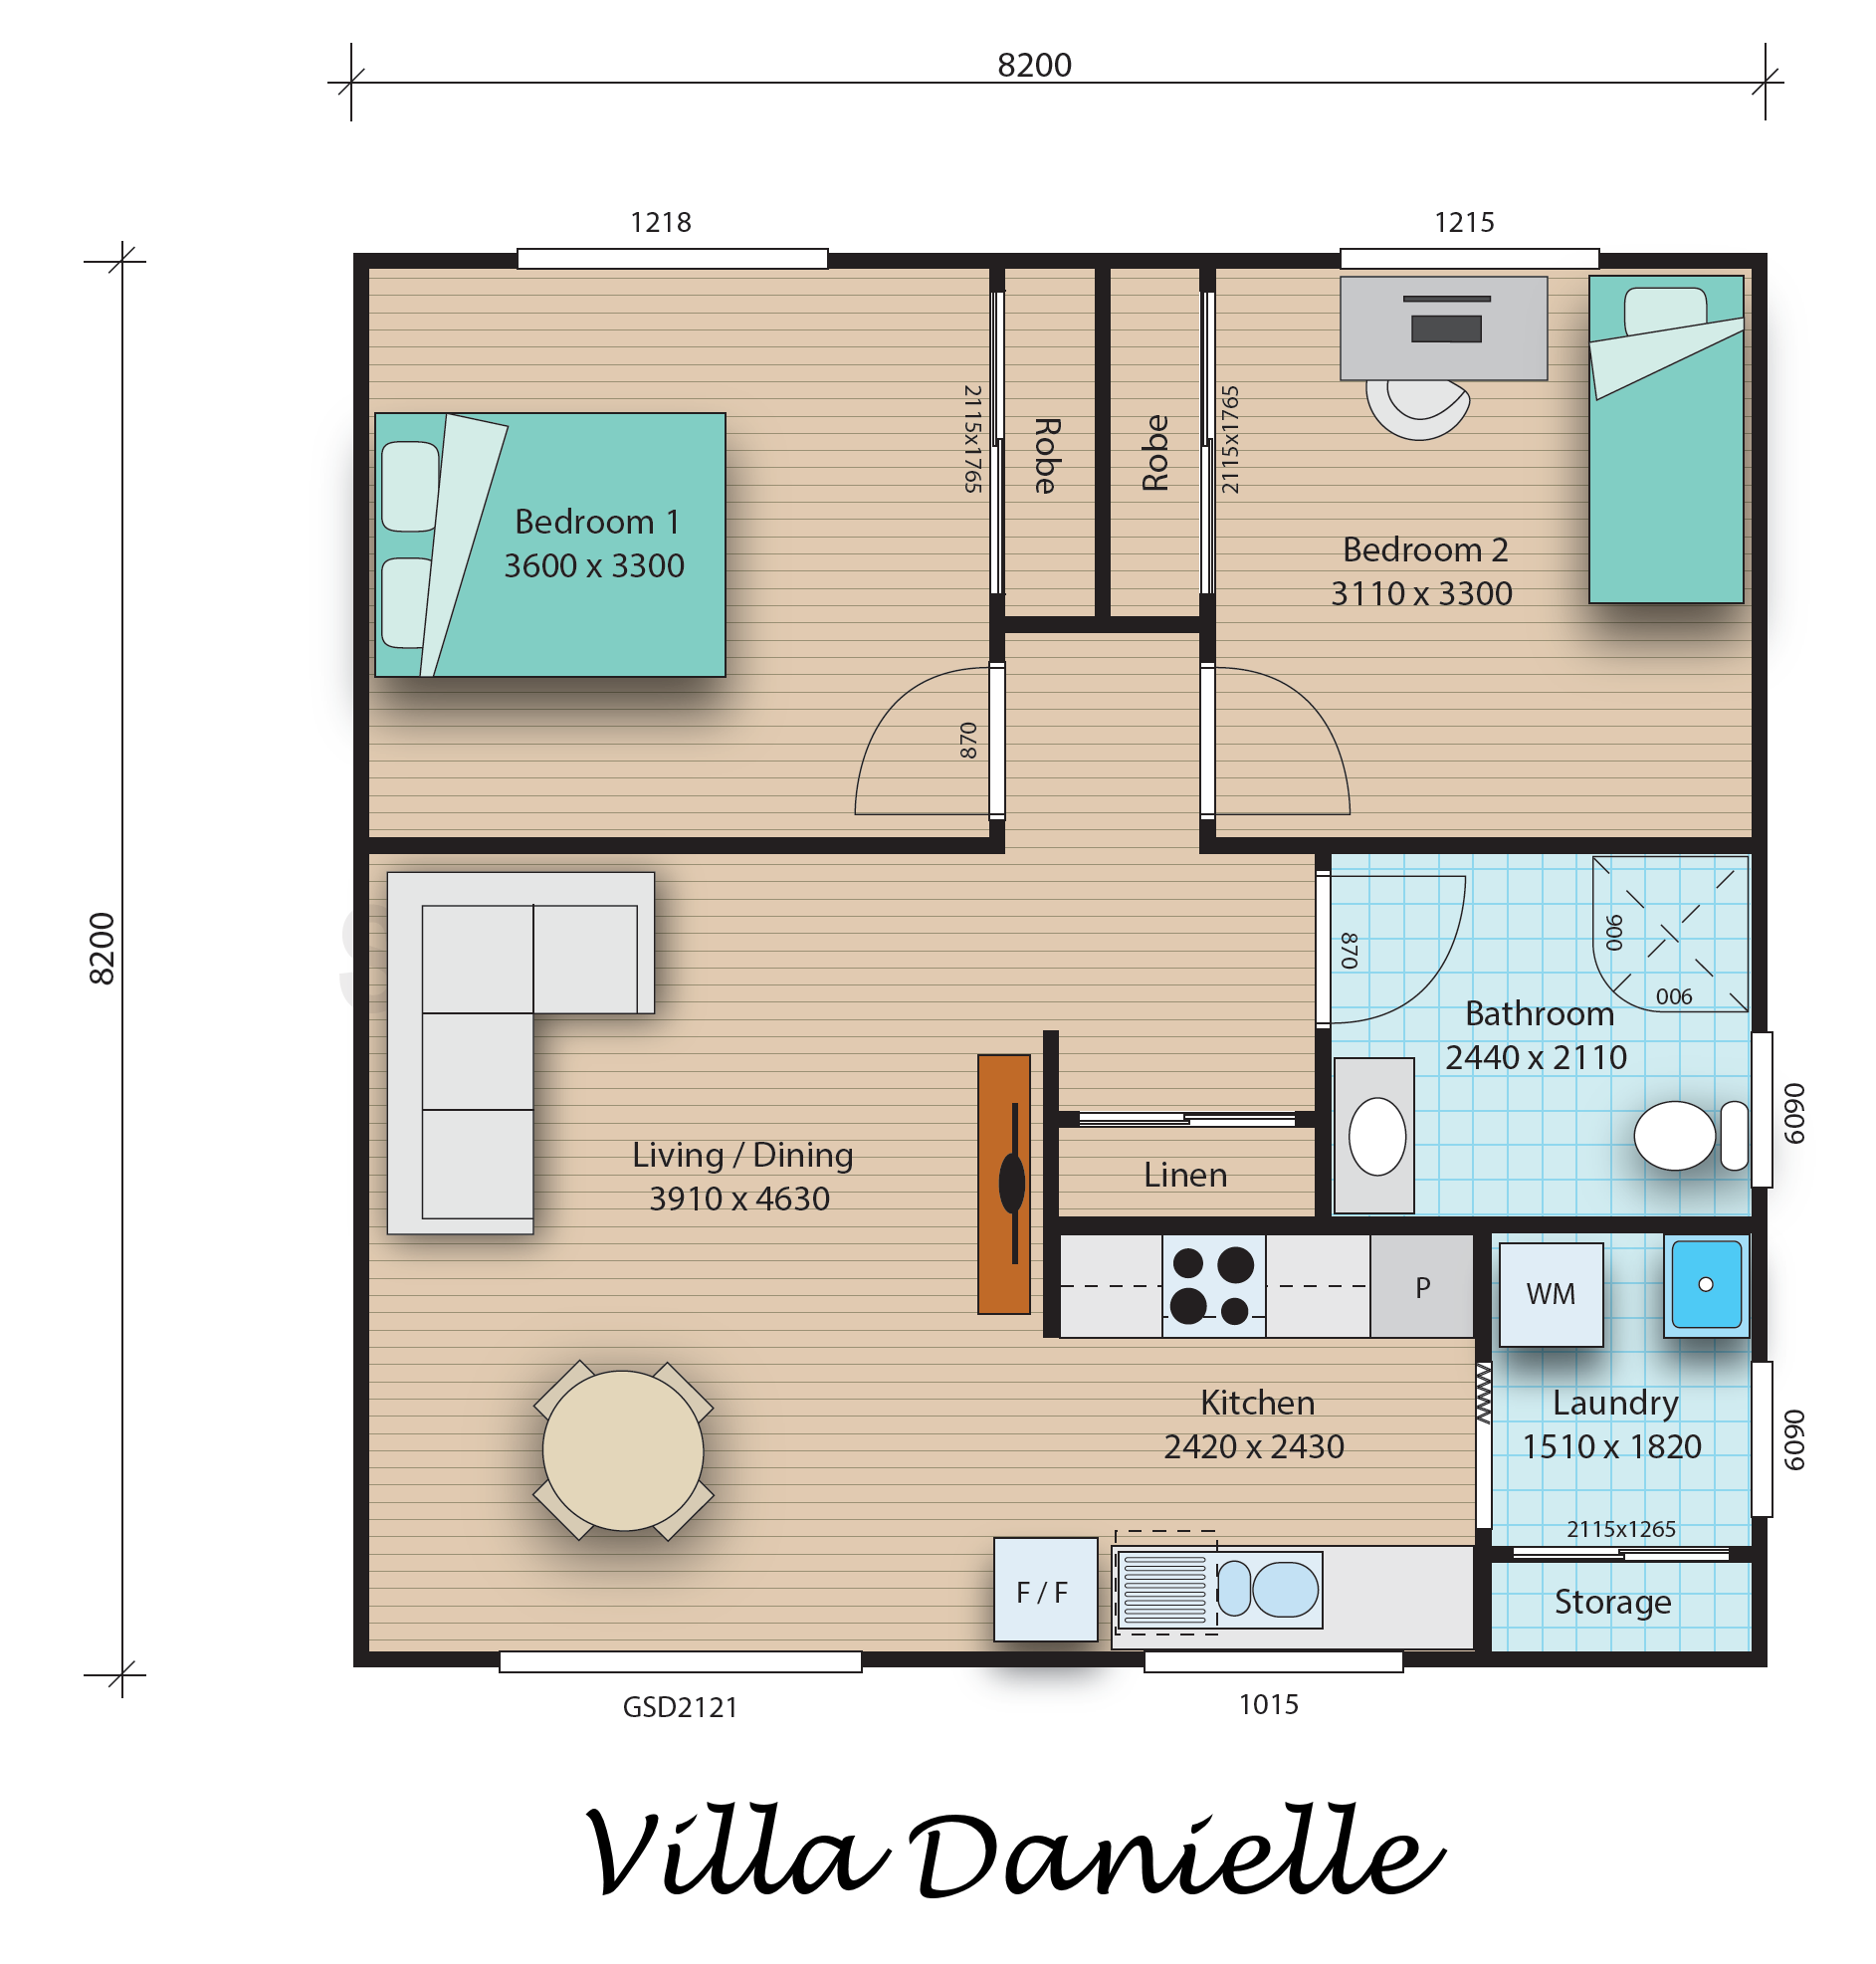 Villa Danielle floorplan image